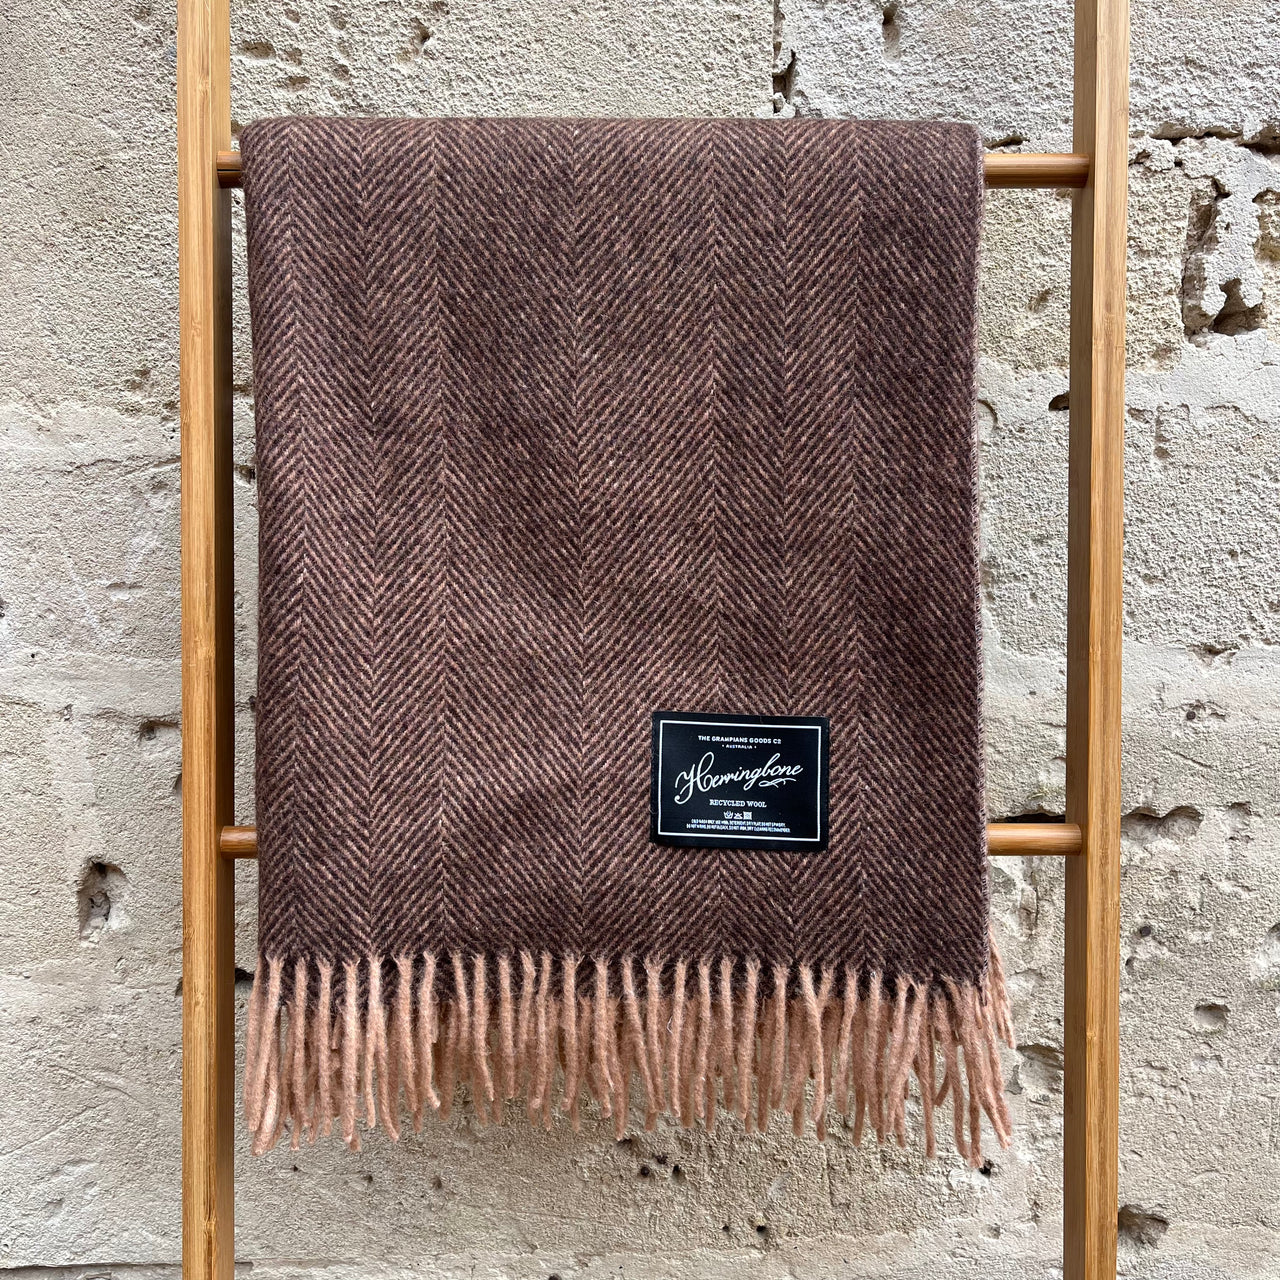 Herringbone Collection | Recycled Wool Blanket | Muscat by The Grampians Goods Co. Australian Art Prints and Homewares. Green Door Decor. www.greendoordecor.com.au